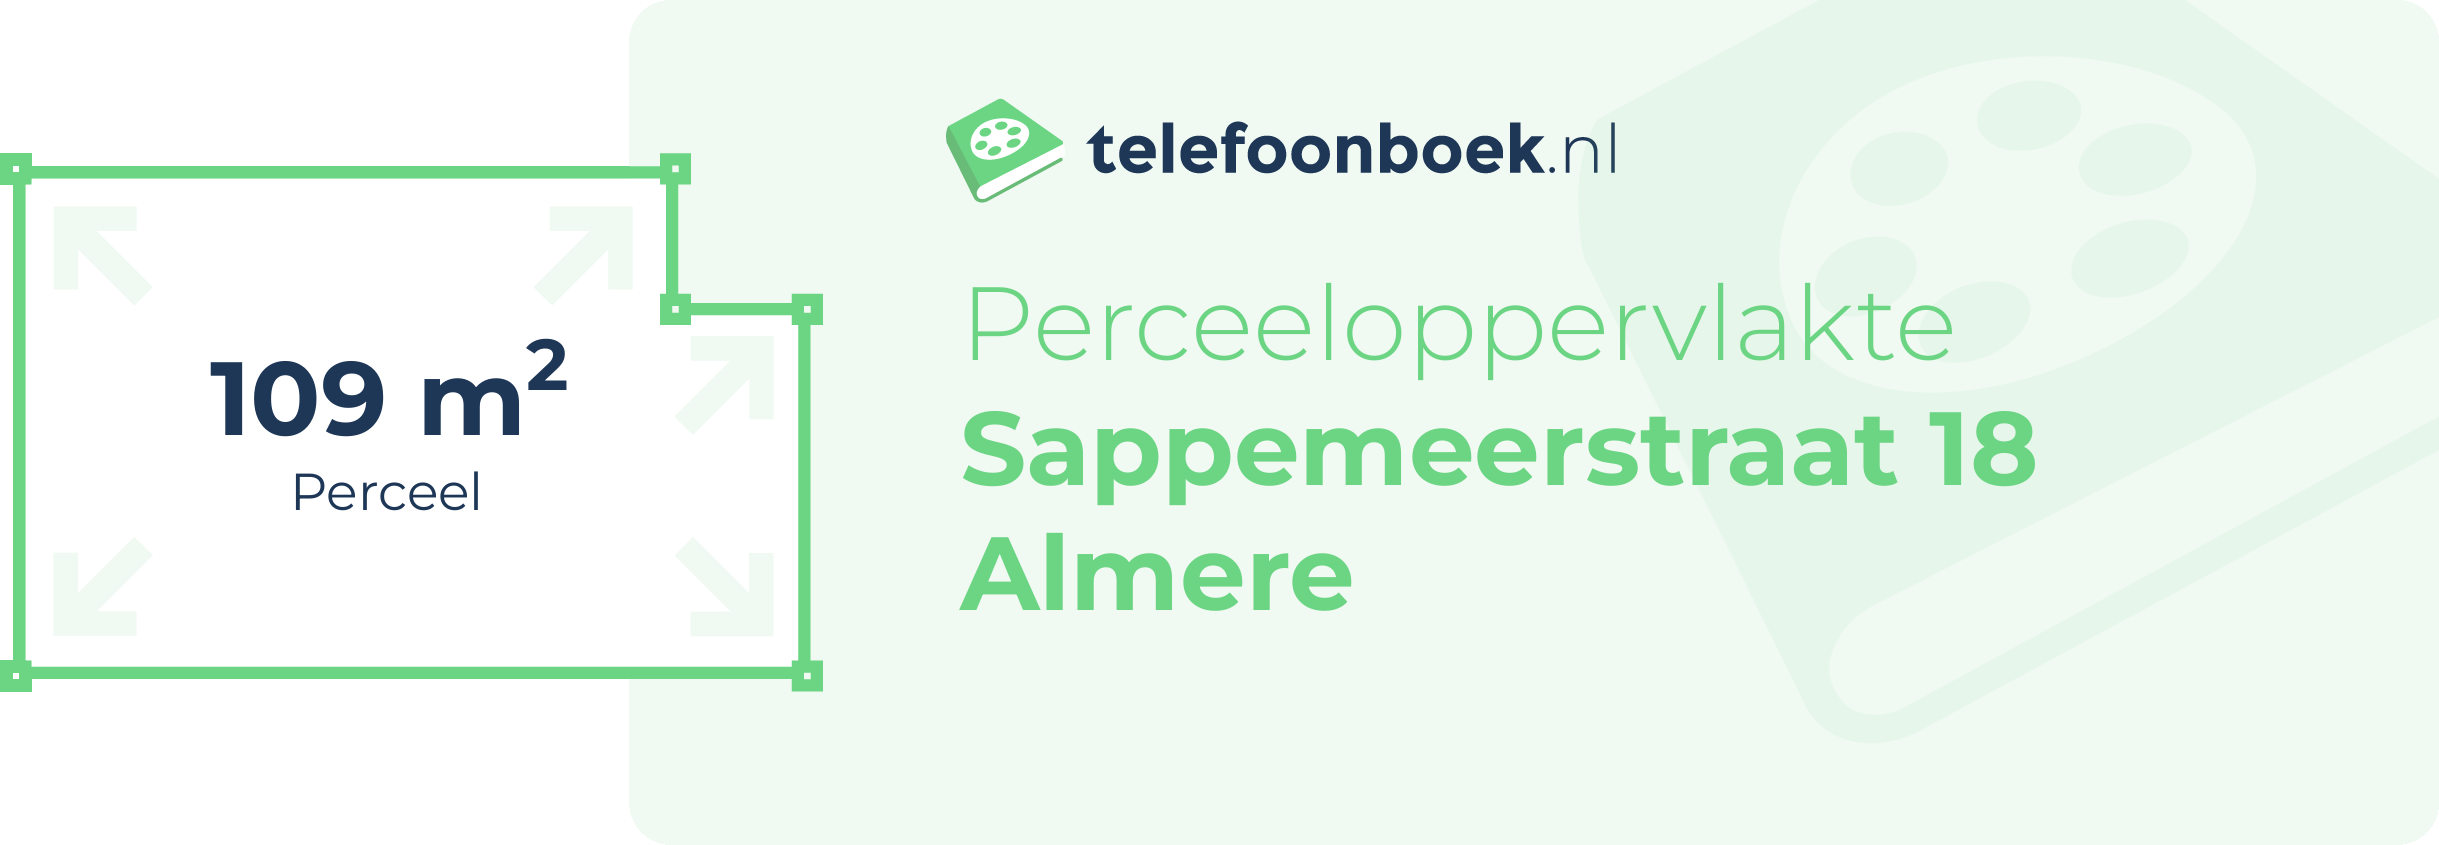 Perceeloppervlakte Sappemeerstraat 18 Almere